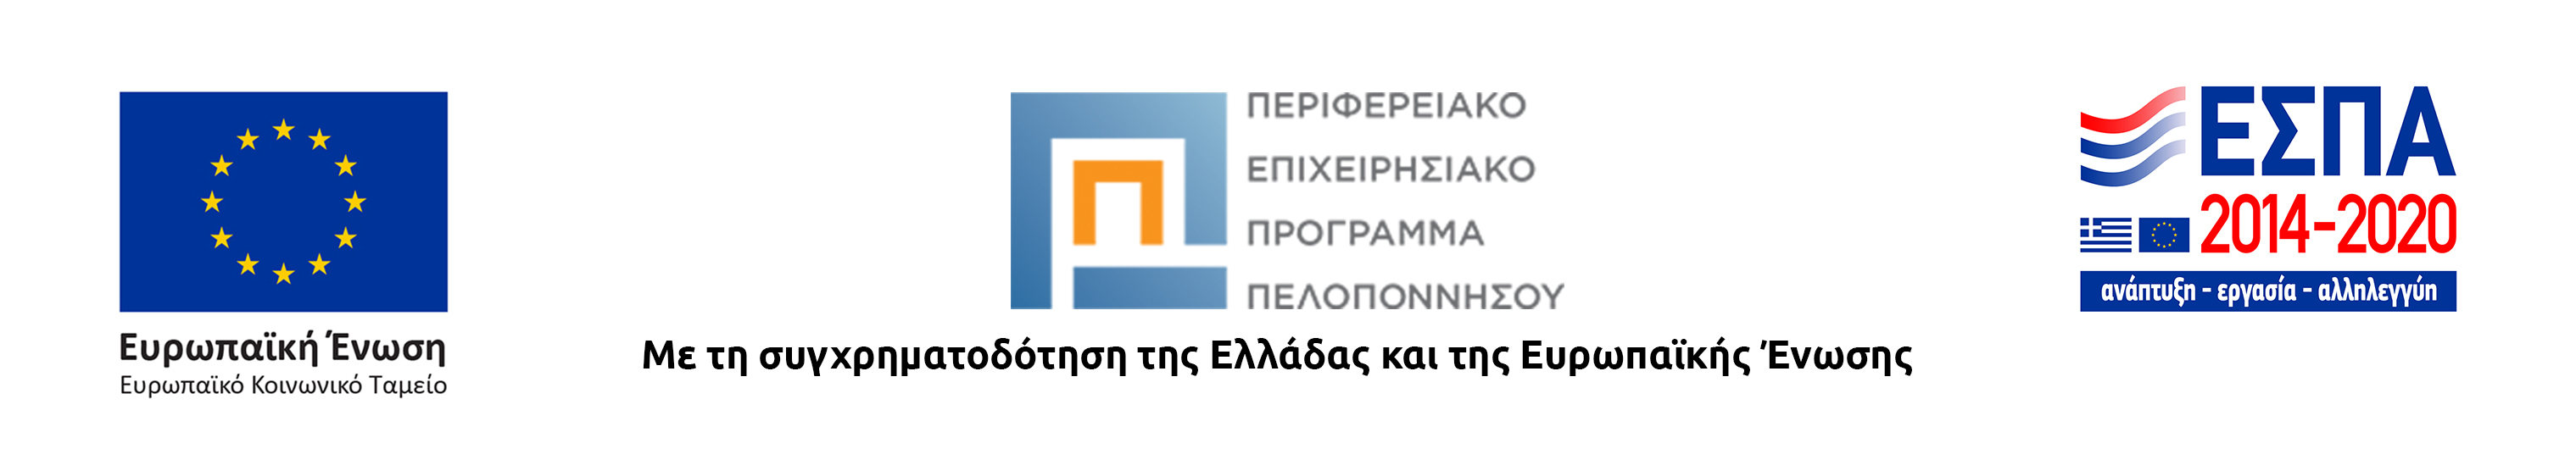 στη φωτογραφία παρουσιάζεται το λογότυπο της Ευρωπαϊκής Ένωσης/Ευρωπαϊκό Κοινωνικό Ταμεία, το λογότυπο του Επιχειρησιακού Προγράμματος 